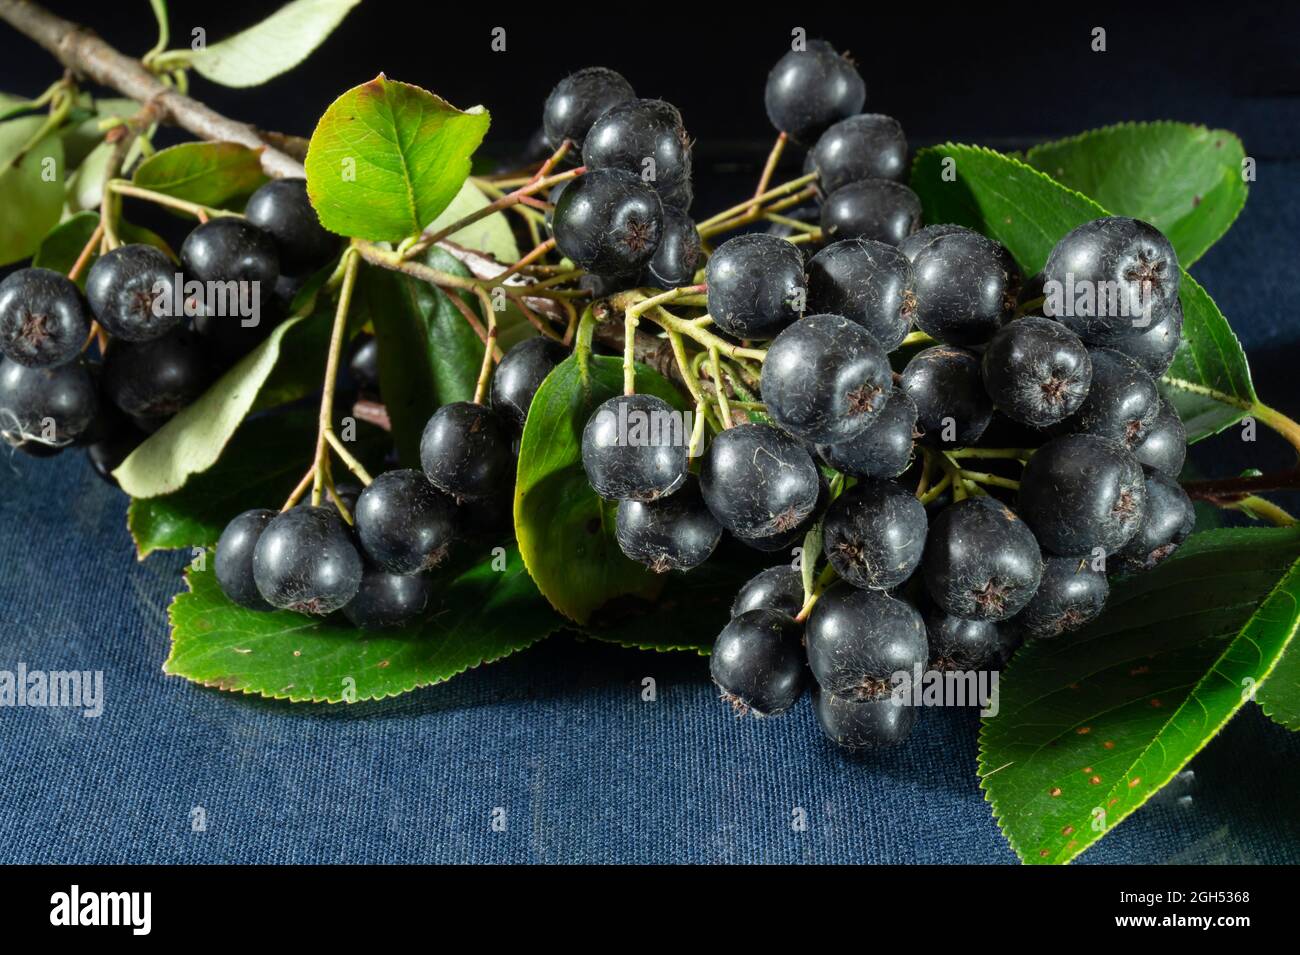 Sul tavolo c'è un ramo di aronia con frutti di bosco / prodotti alimentari su sfondo nero Foto Stock